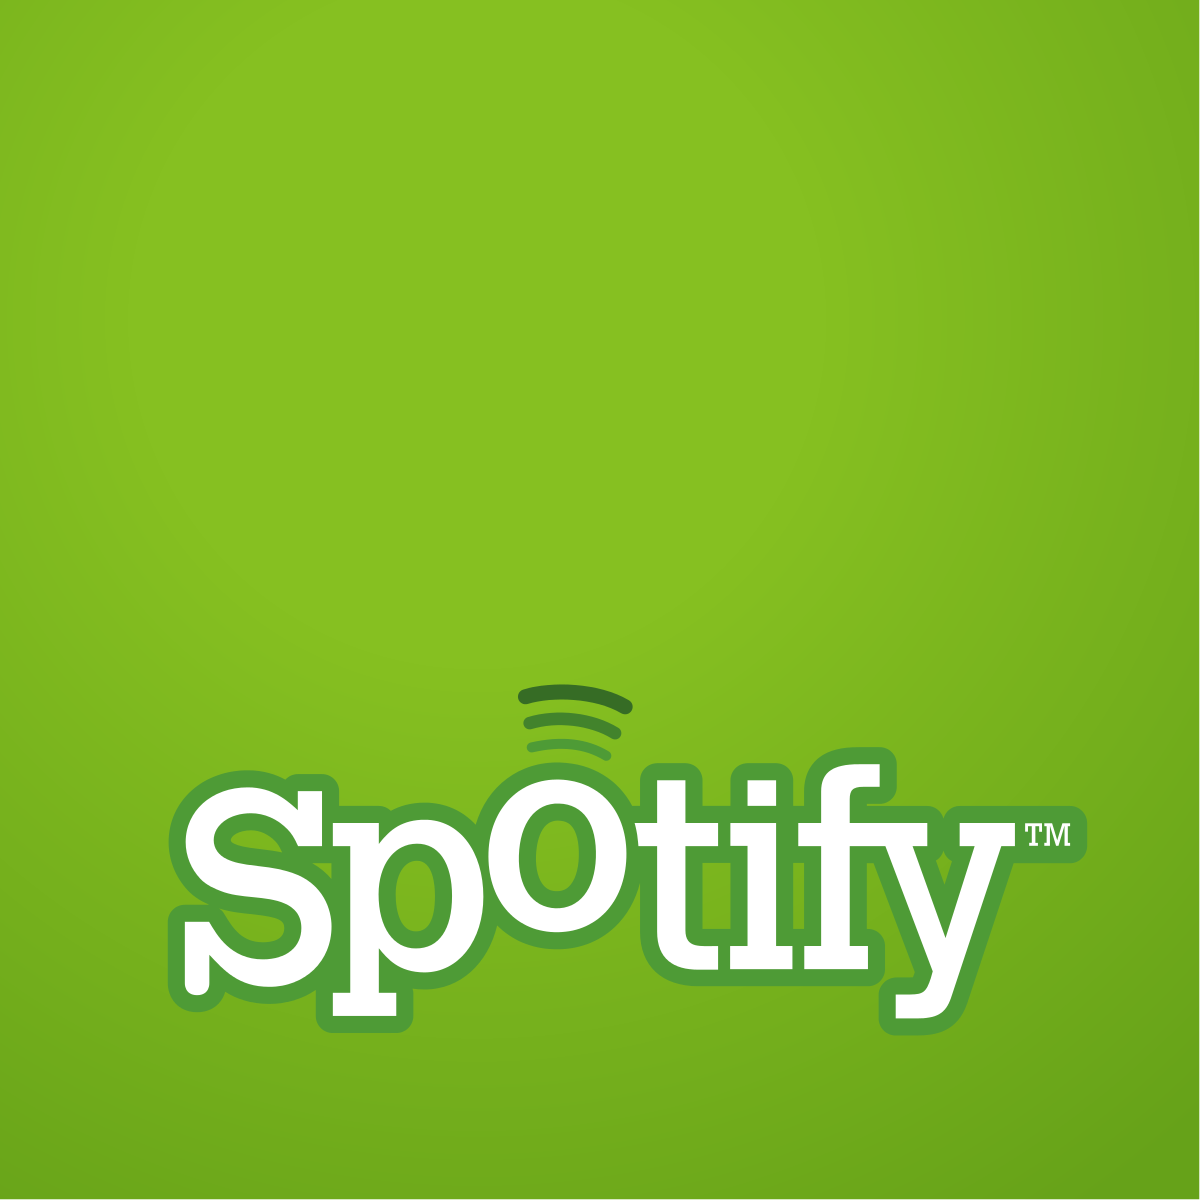 Spotify Logo.svg